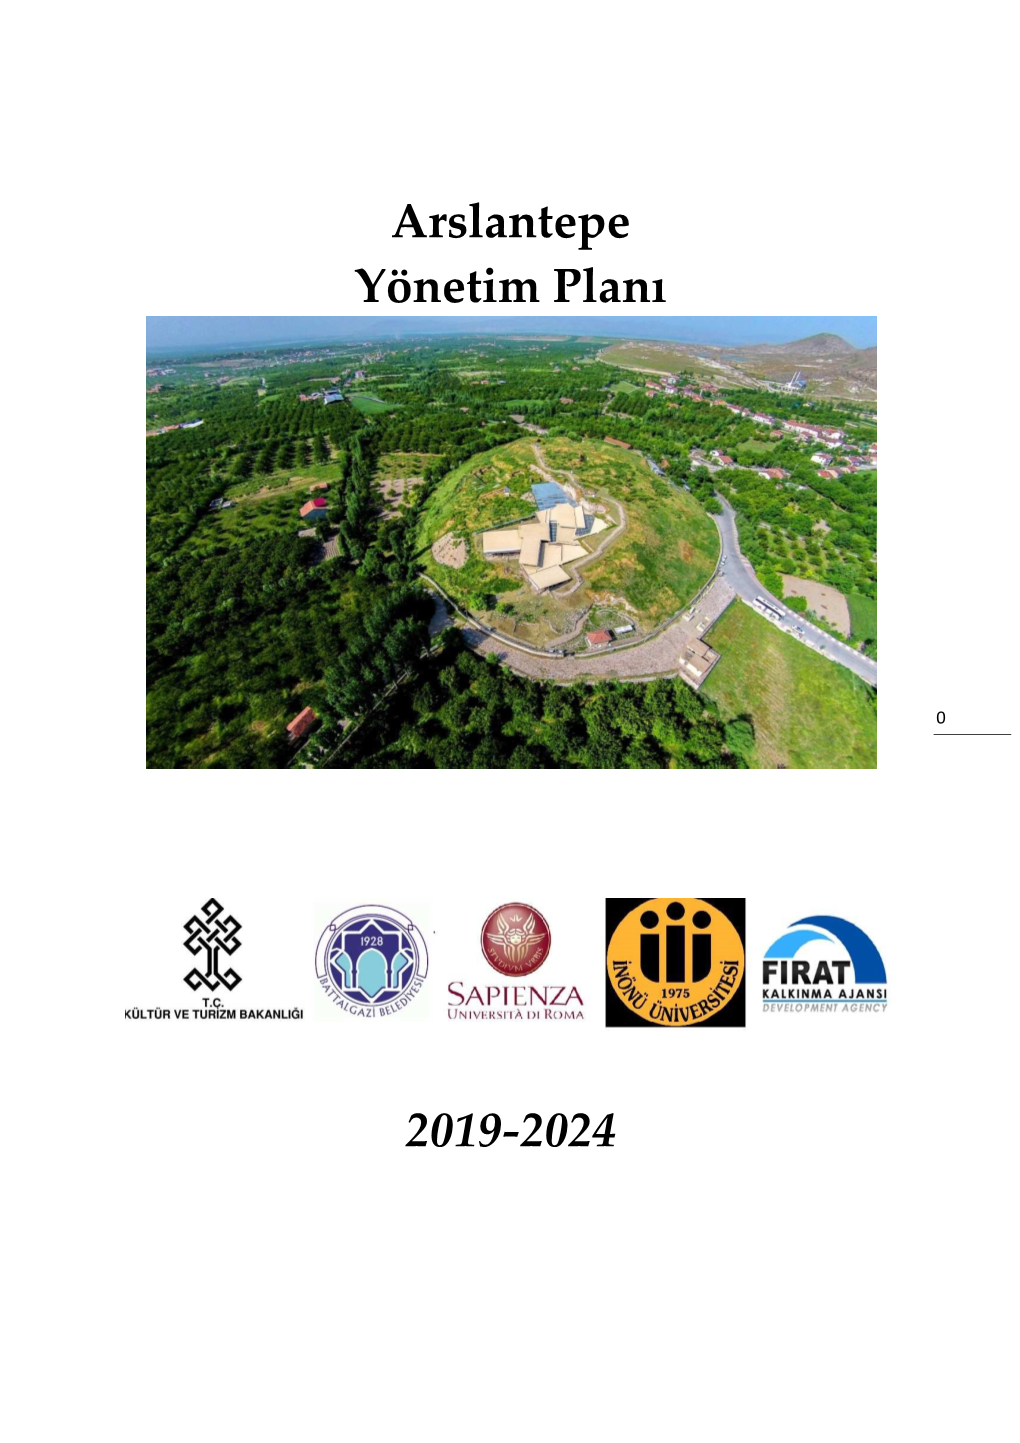 Arslantepe Yönetim Planı 2019-2024